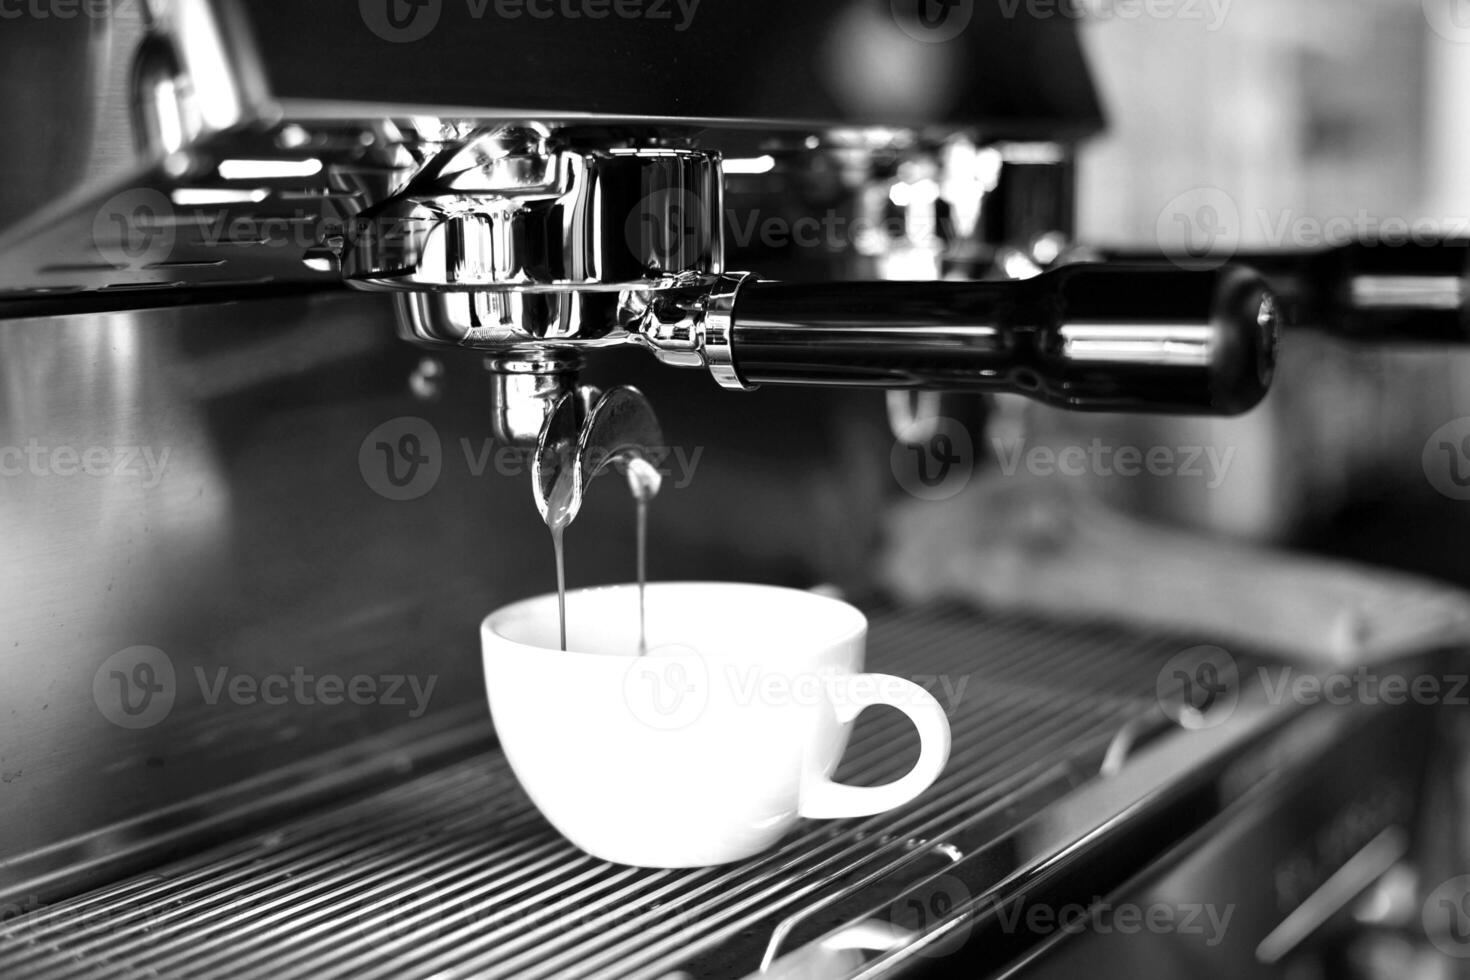 café tasse proche vue noir et blanc photo arrière-plan, tasse de thé ou café sur le table